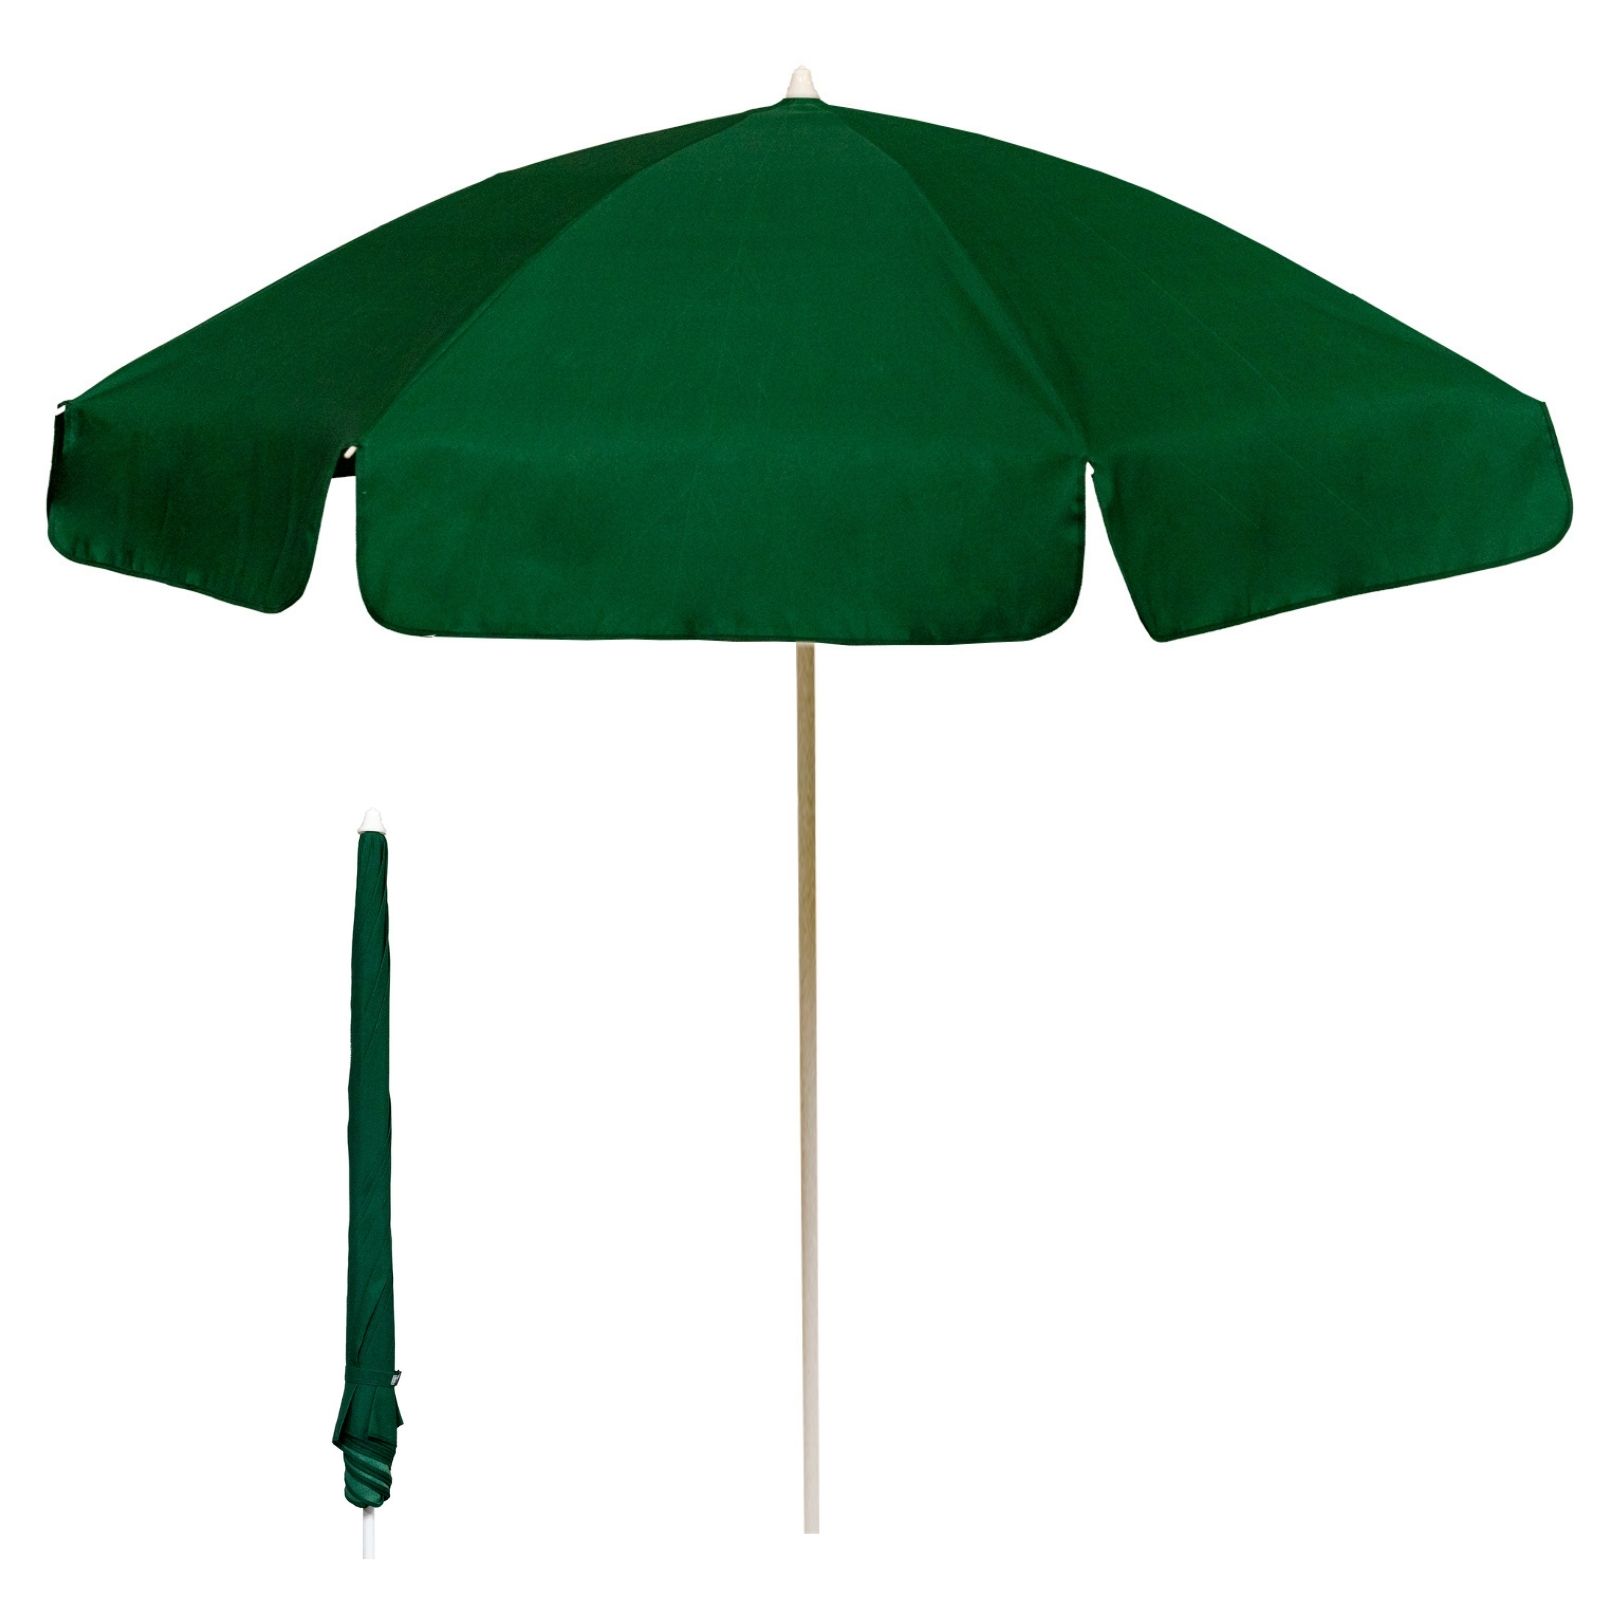 vrek Quagga spontaan Garden Umbrellas/Pub Parasols - 2m Diameter - Wholesale Trade Prices